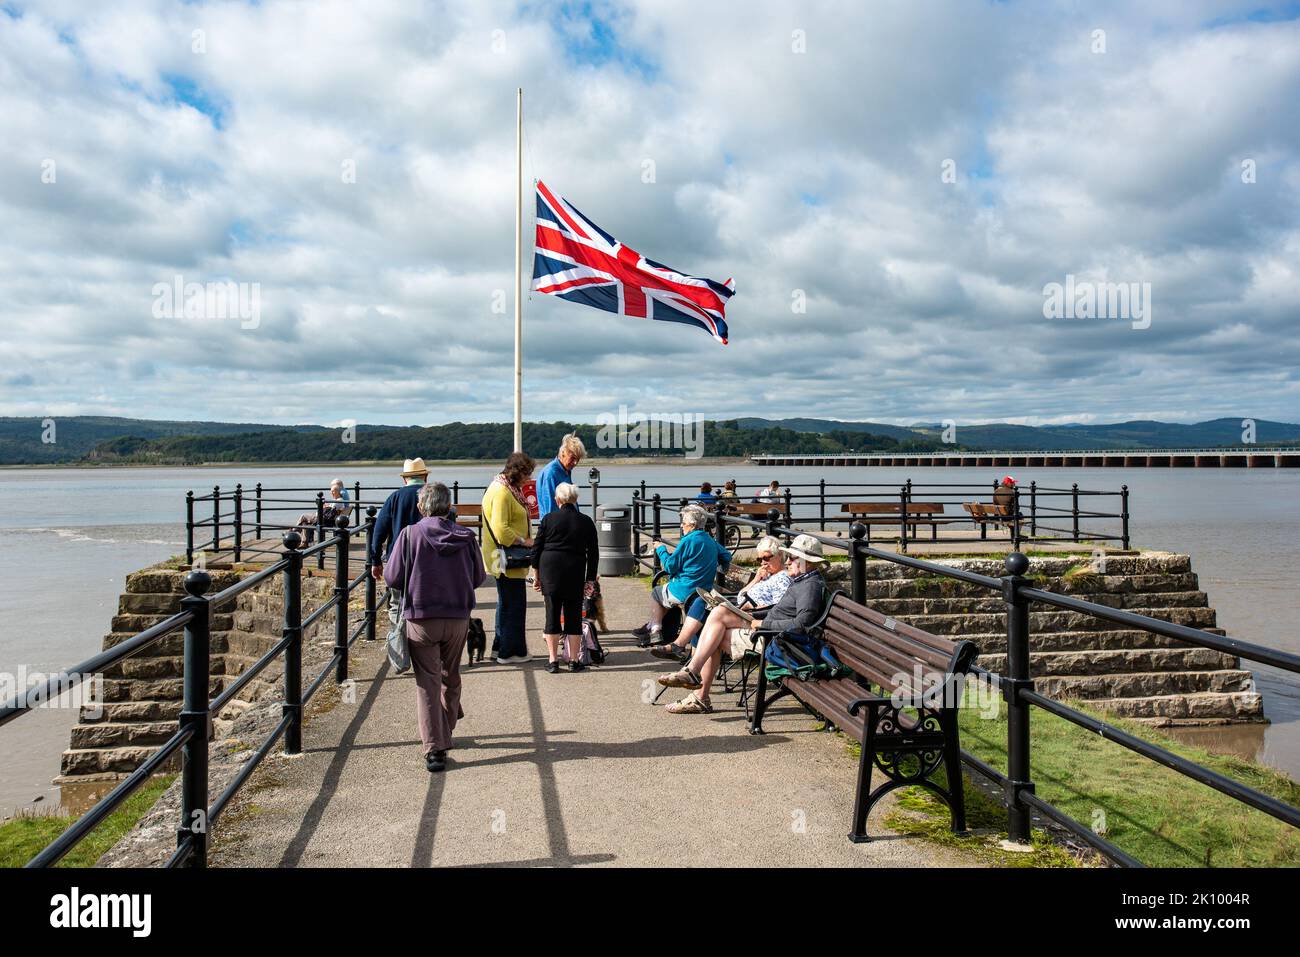 Reina de duelo Elizabeth II, Arnside, Milnthorpe, Cumbria, Reino Unido La bandera de la Unión en medio mástil en el muelle de Arnside, Milnthorpe, Cumbria, Reino Unido Crédito: John Eveson/Alamy Live News Foto de stock